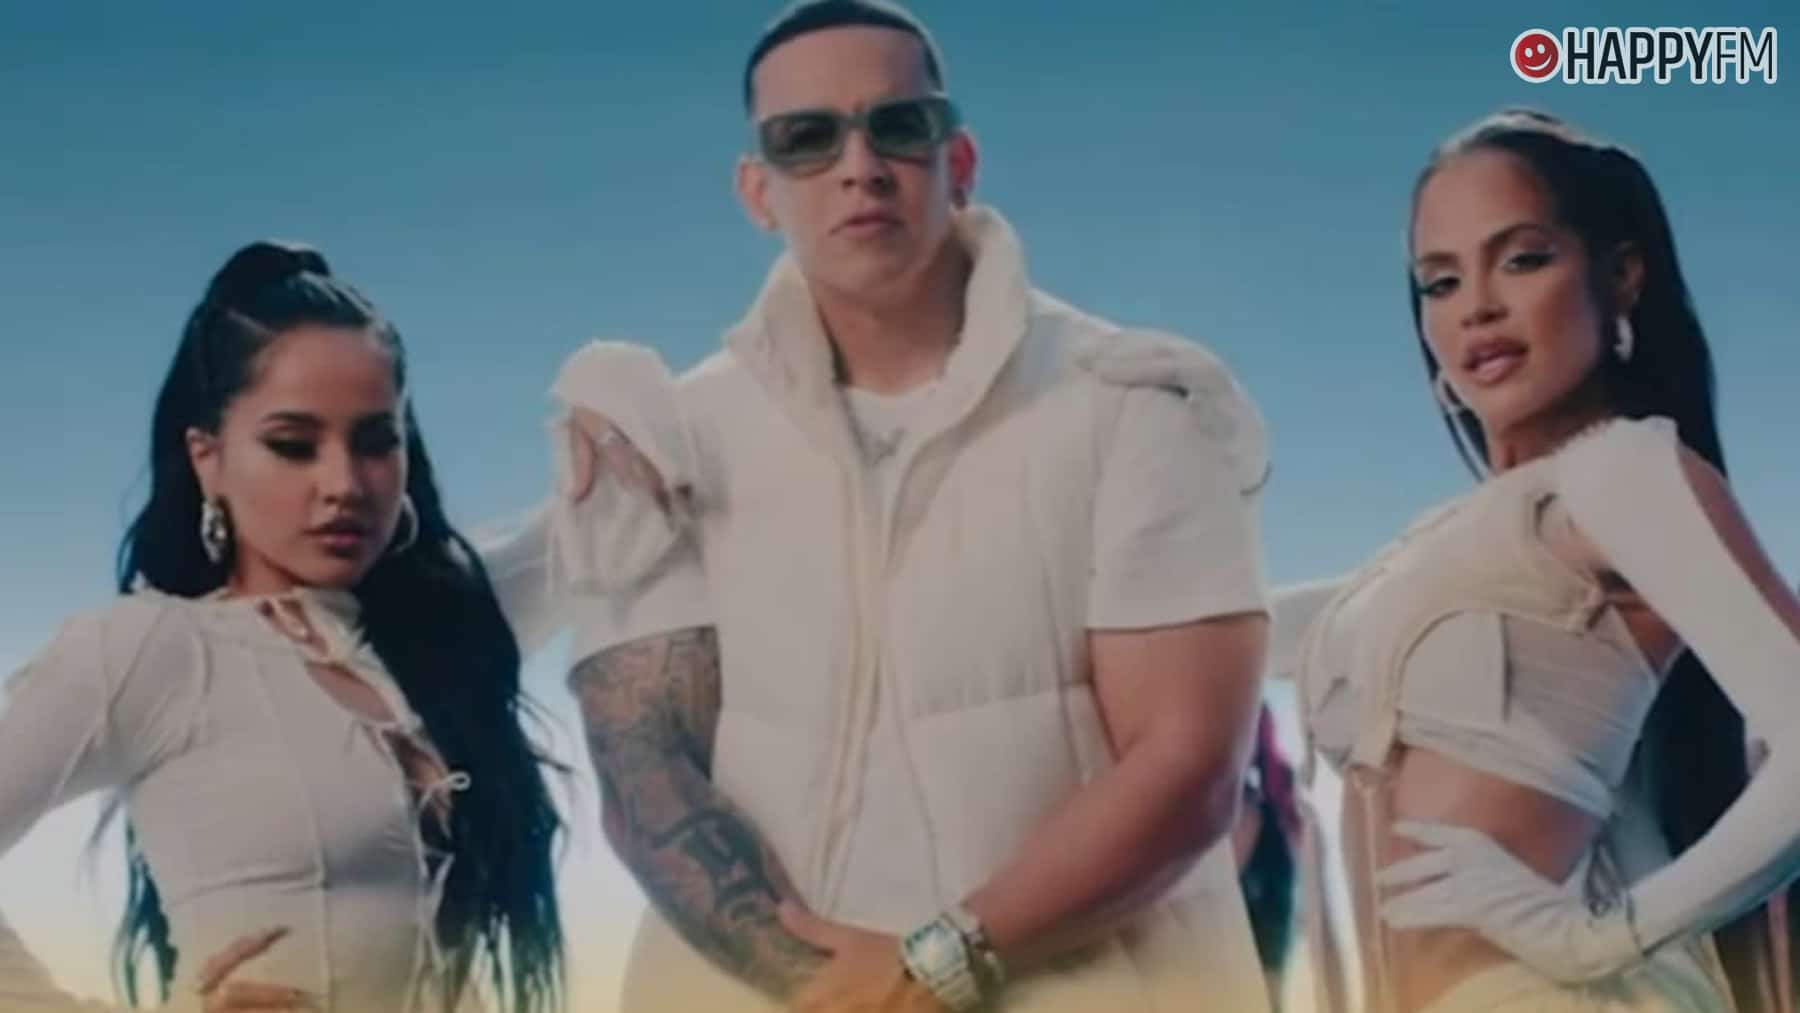 ‘Zona de perreo’, de Daddy Yankee, Natti Natasha y Becky G: letra y vídeo